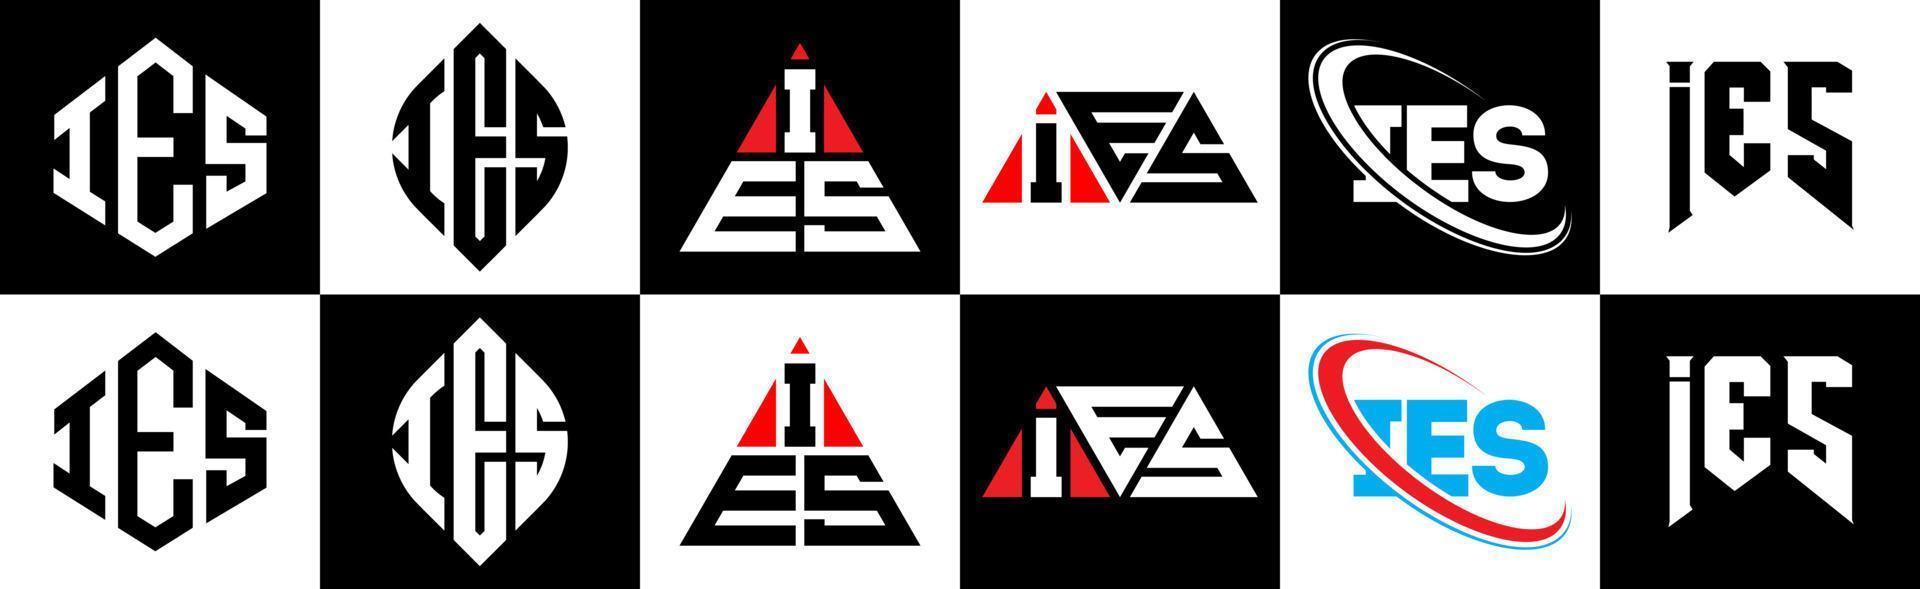 création de logo de lettre ies en six styles. c'est-à-dire un polygone, un cercle, un triangle, un hexagone, un style plat et simple avec un logo de lettre de variation de couleur noir et blanc dans un plan de travail. logo minimaliste et classique vecteur